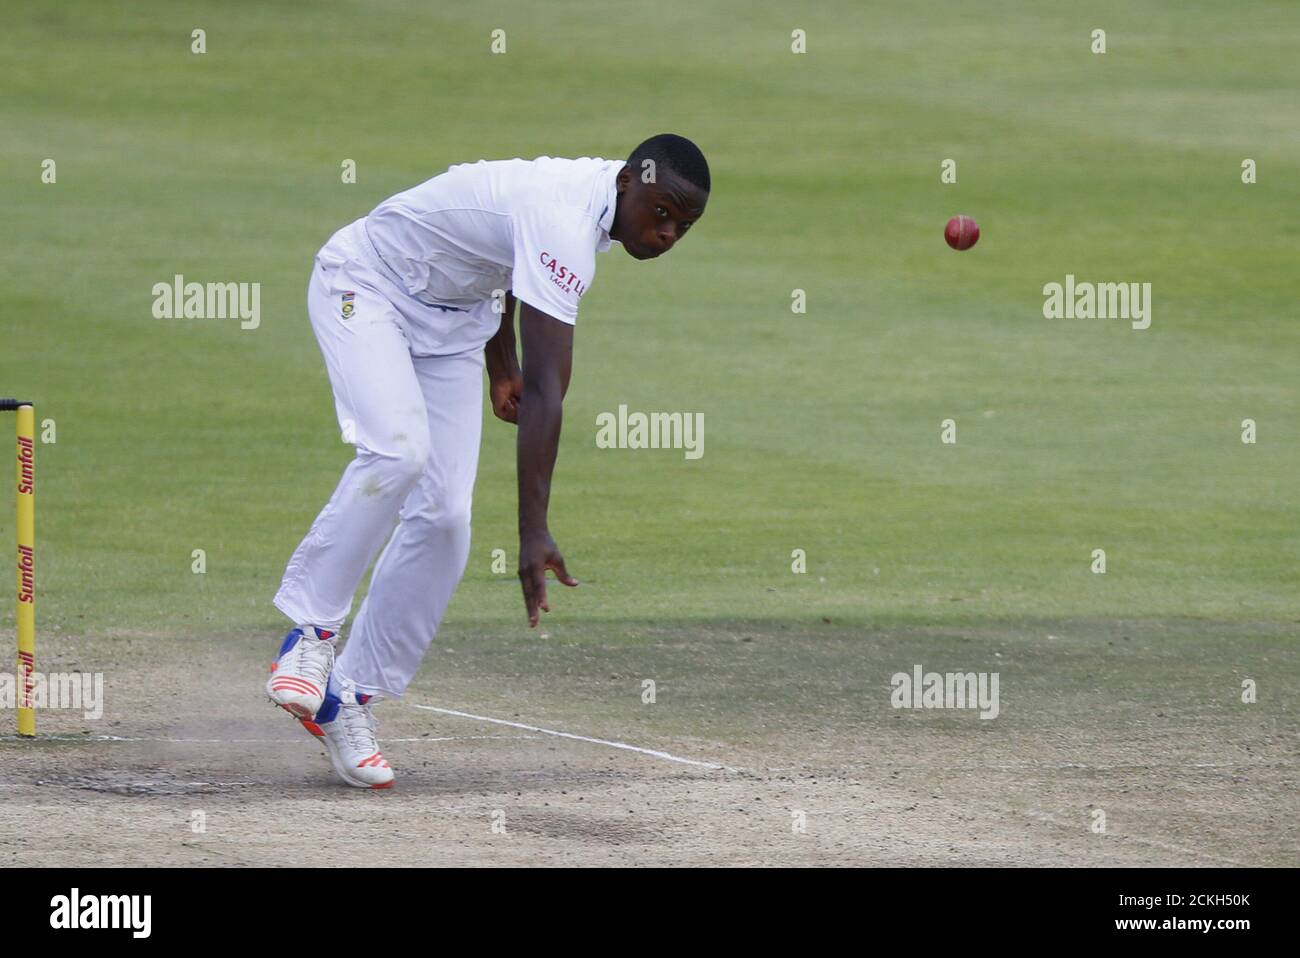 Le Kagiso Rabada, en Afrique du Sud, se batte lors du deuxième match de cricket contre l'Angleterre, au Cap, en Afrique du Sud, le 6 janvier 2016. REUTERS/Mike Hutchings Banque D'Images